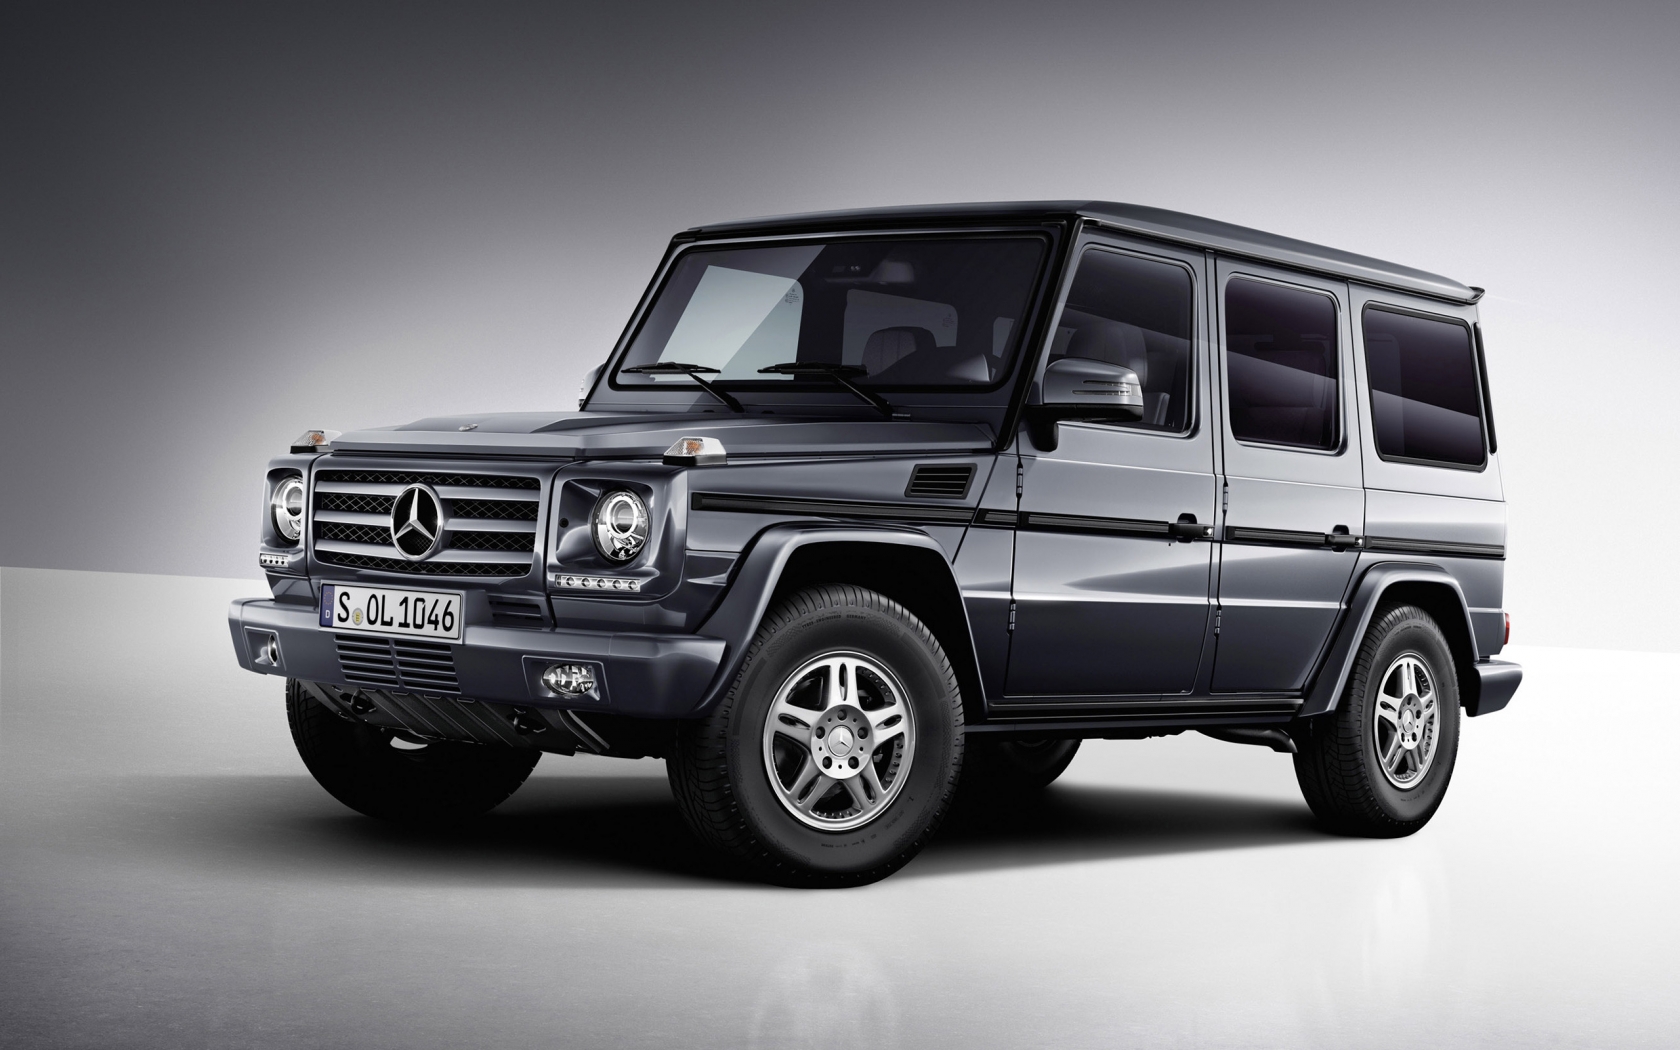 Mercedes Benz G Class Studio 2013 for 1680 x 1050 widescreen resolution